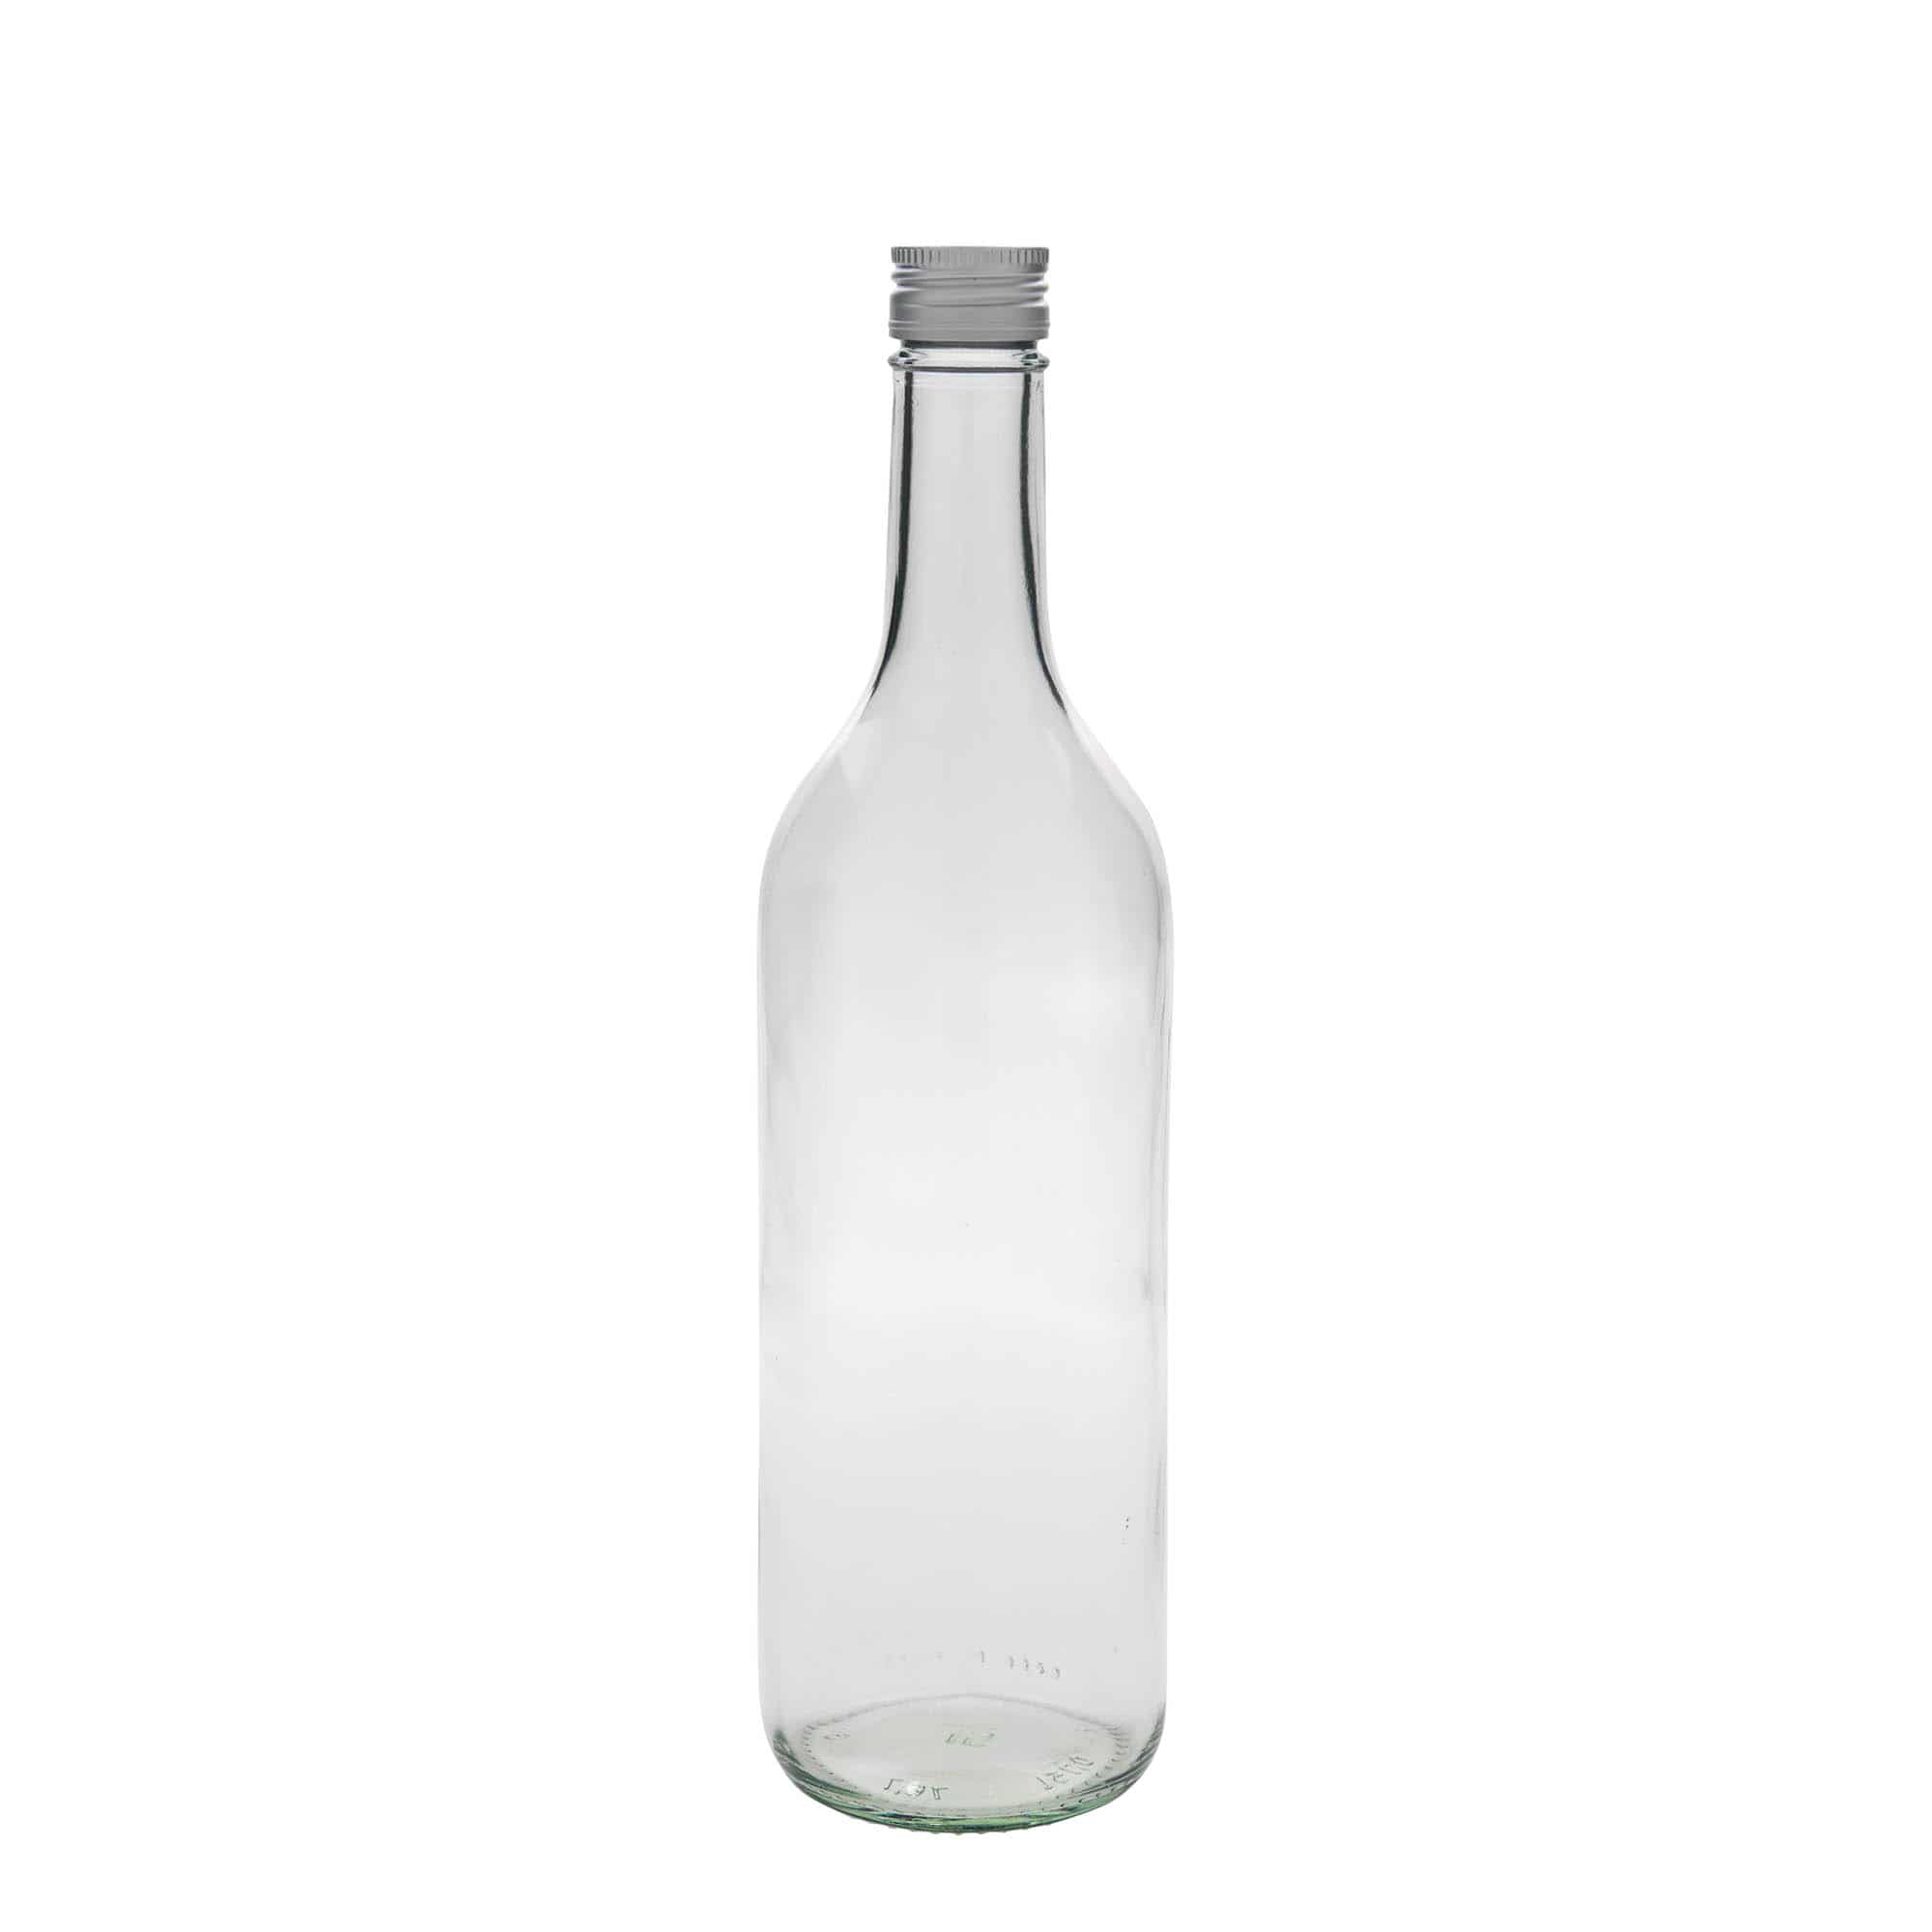 750 ml glass bottle 'Bordeaux', closure: PP 28